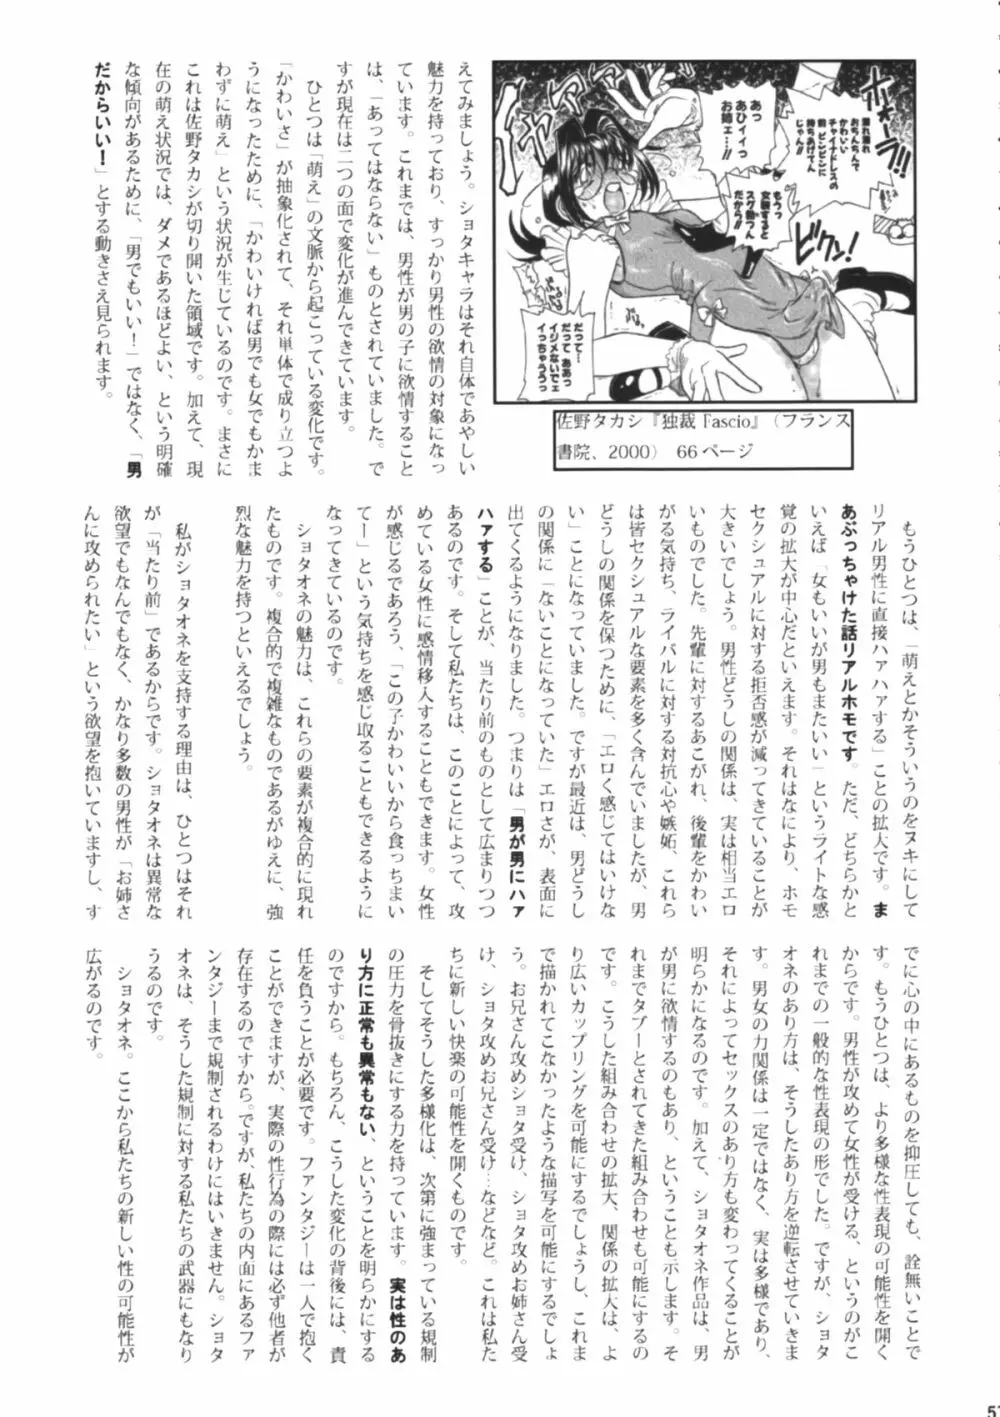 Shota x One 2 56ページ